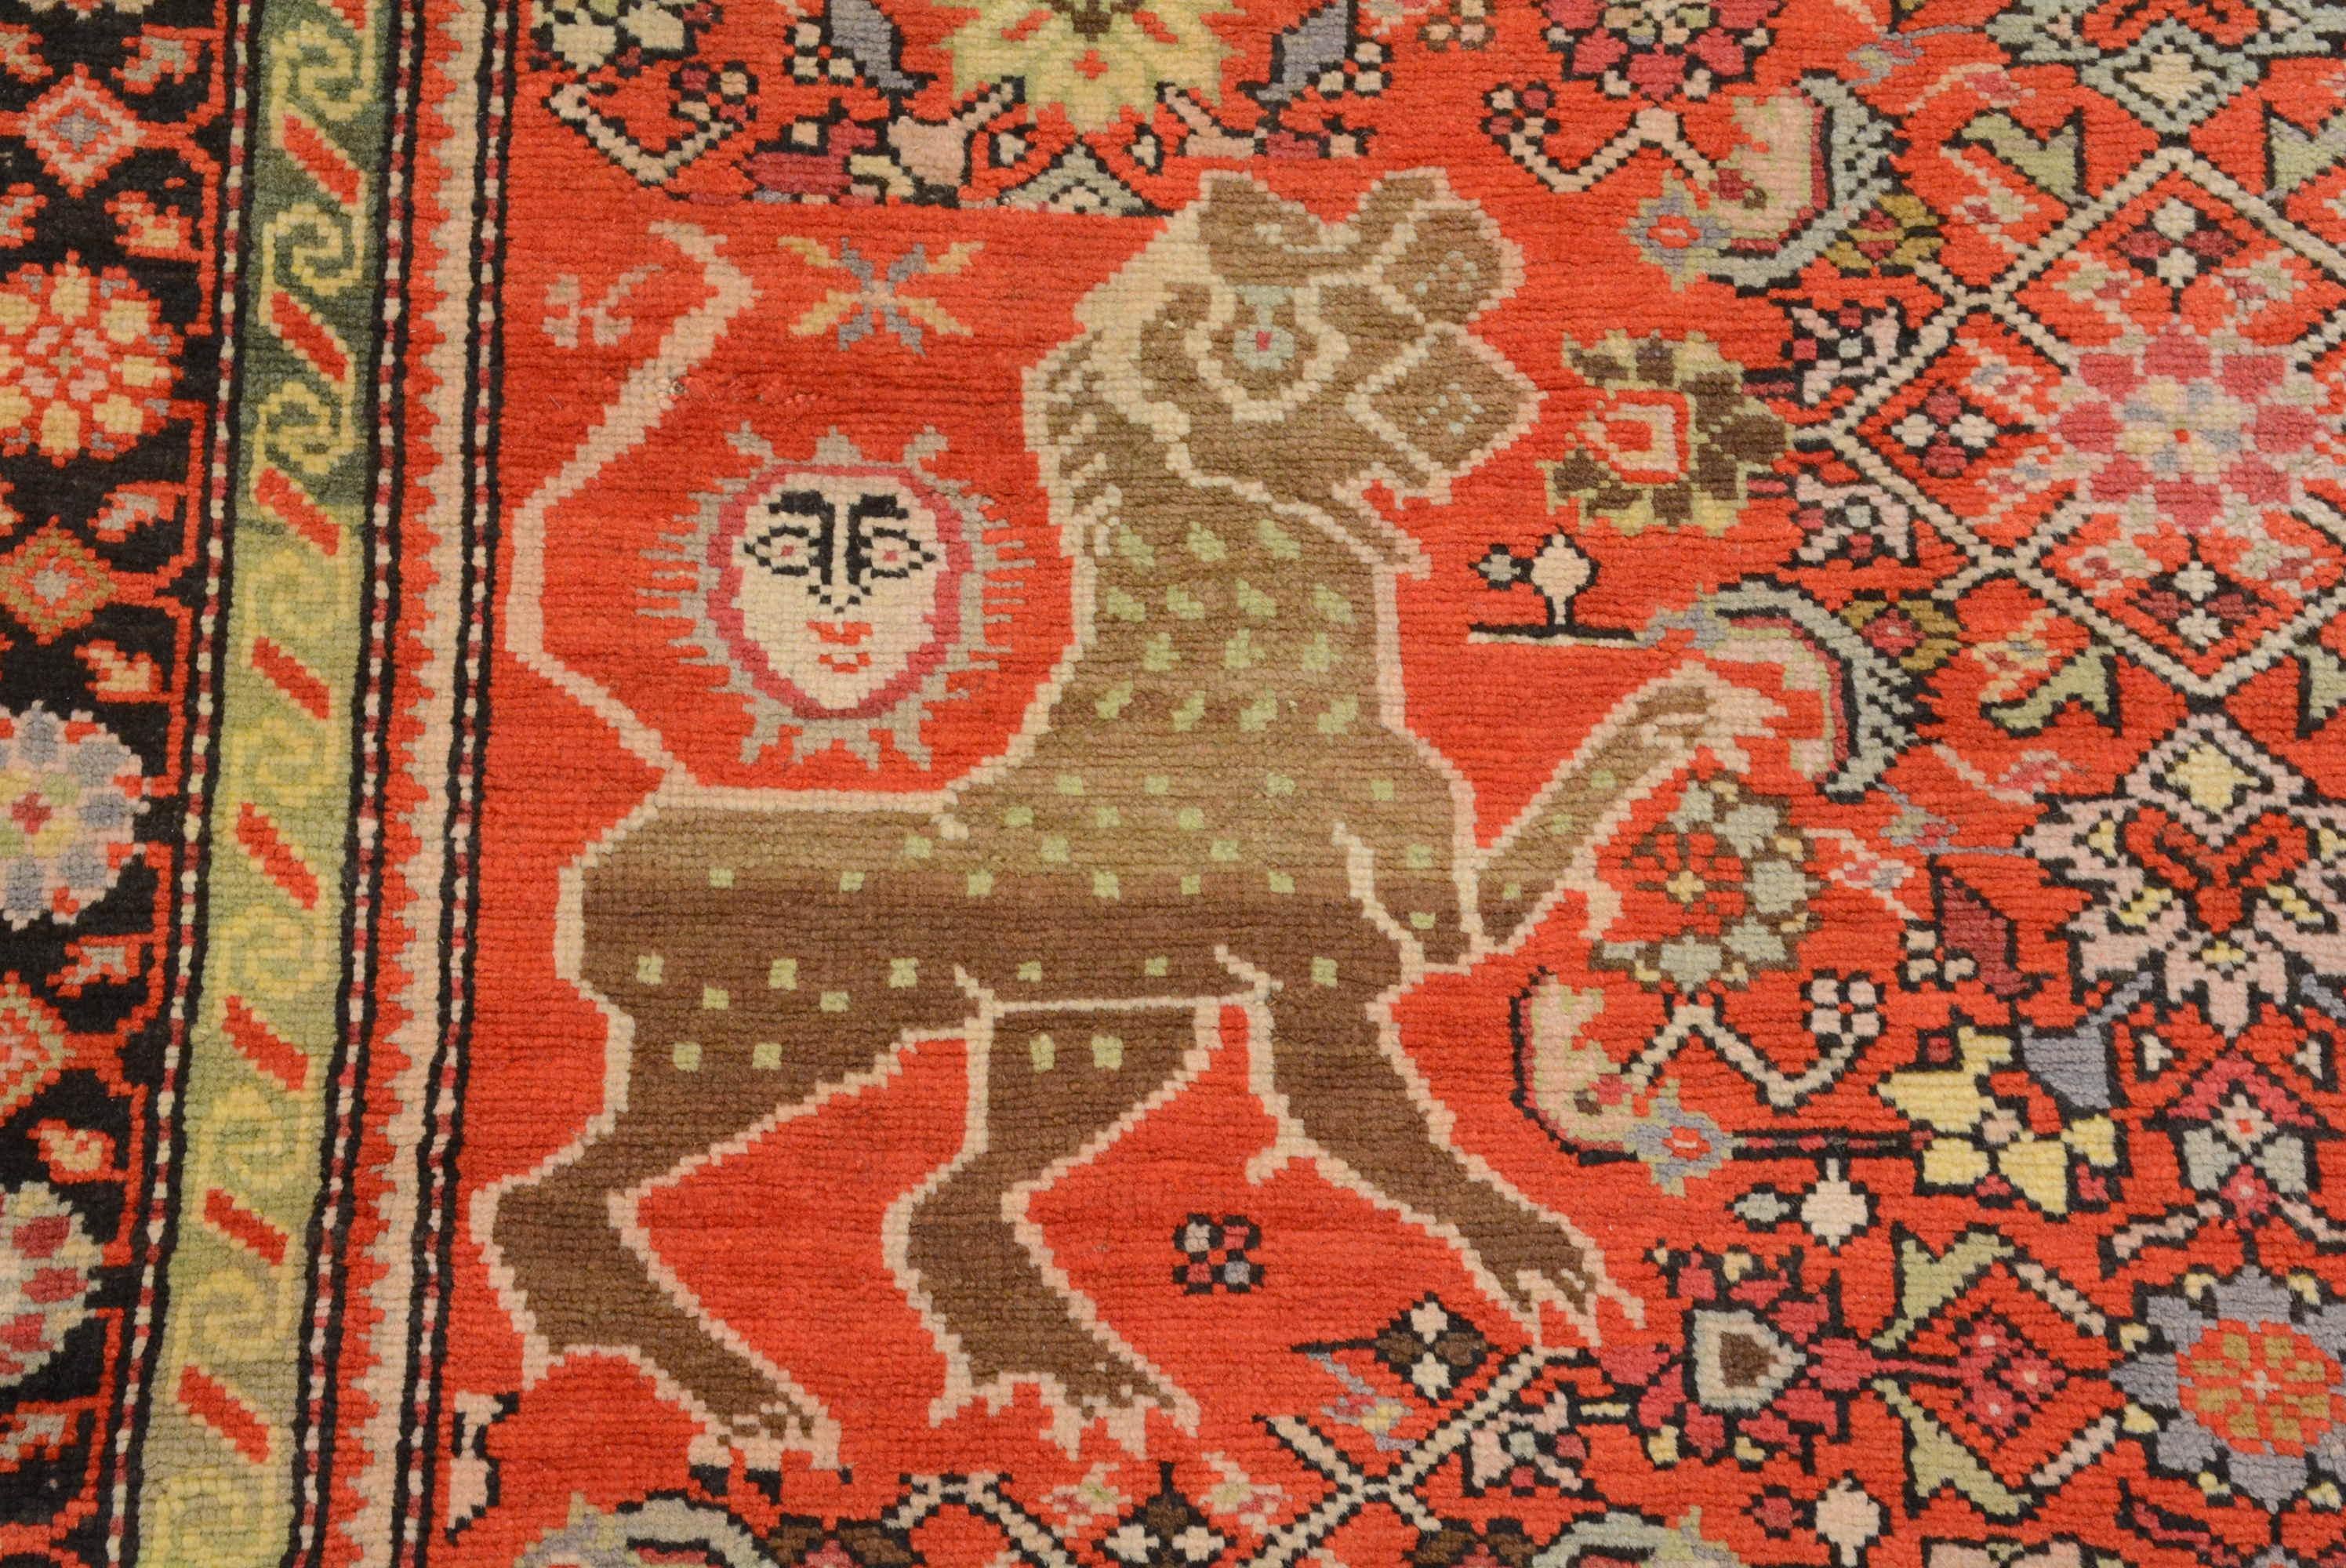 La région du Karabagh, dans le sud du Caucase, produit des tapis depuis le XIIIe siècle. Cette région est peuplée d'Arméniens chrétiens, de Kurdes, de Turcs azéris et de musulmans. La production de tapis s'est considérablement développée au cours de